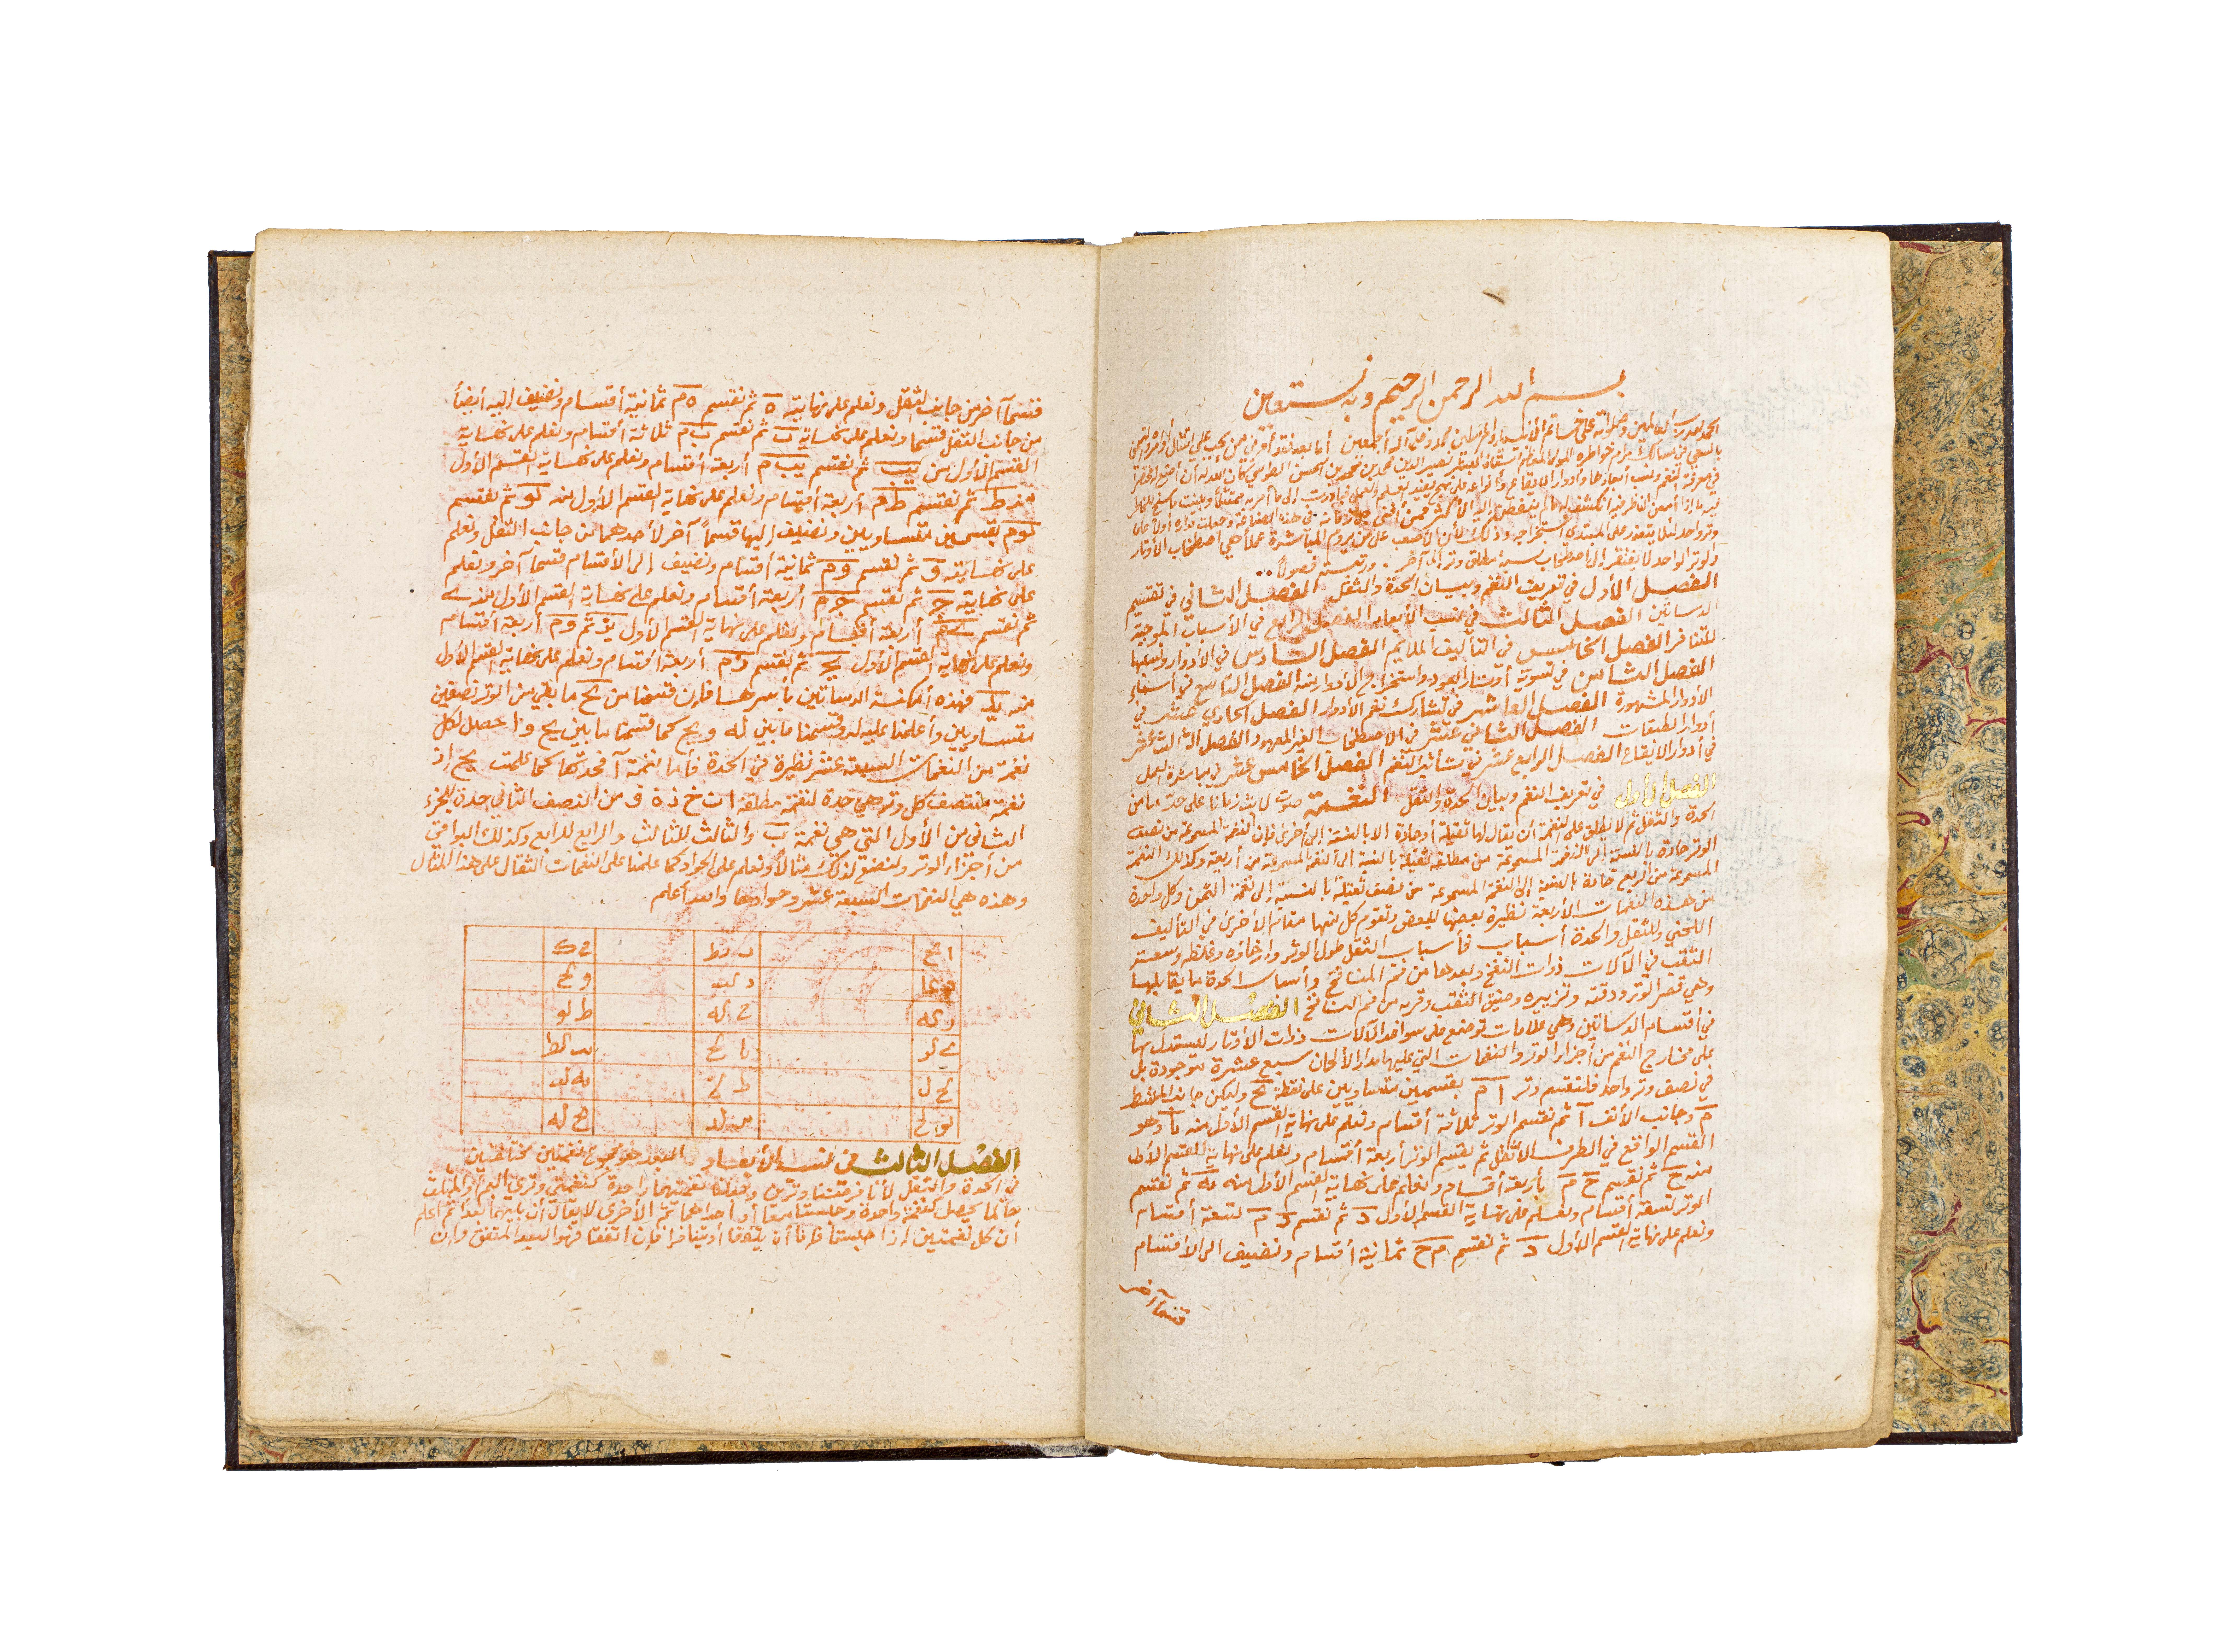 KHULASAT AL'AKFAR FI MAERIFAT ALNAGHAM W AL'ADWAR ALMUSIQA, BOOK ON MUSIC WRITTEN BYT AL-HAKIM AL-WA - Image 4 of 8